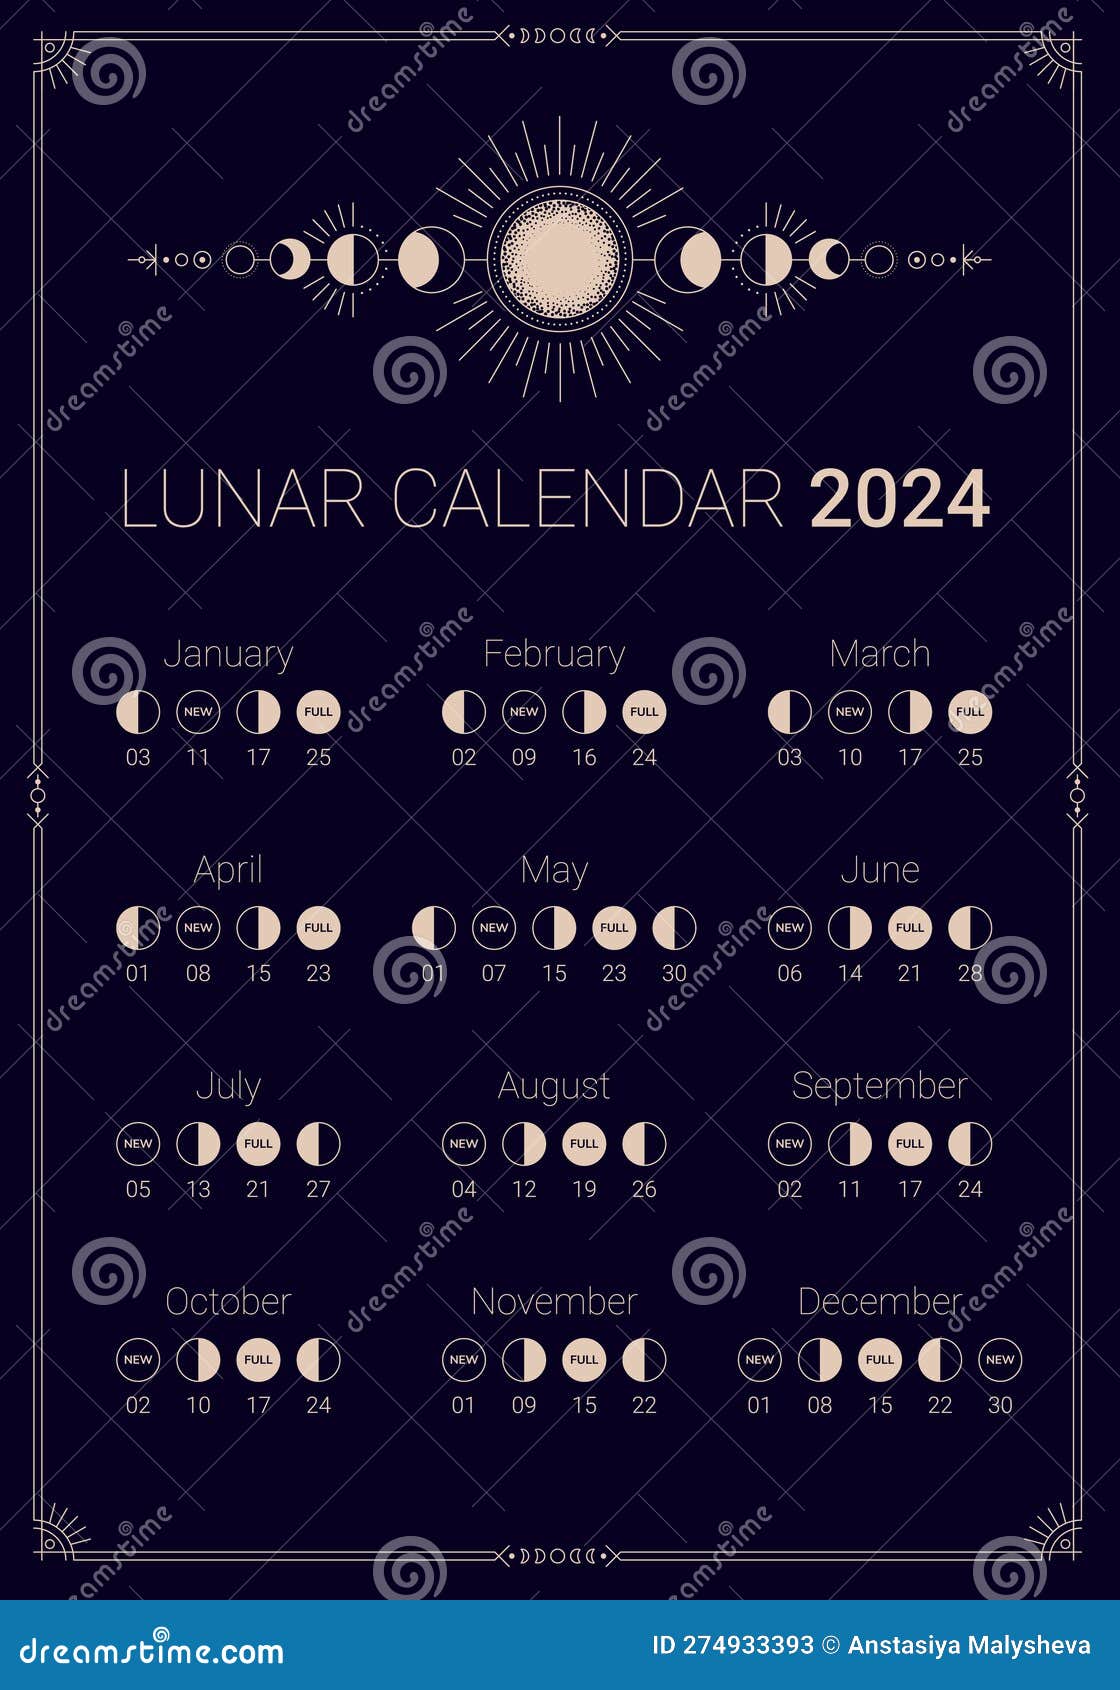 2024 Year Lunar Calendar on Dark Night Sky Backdrop Stock Vector